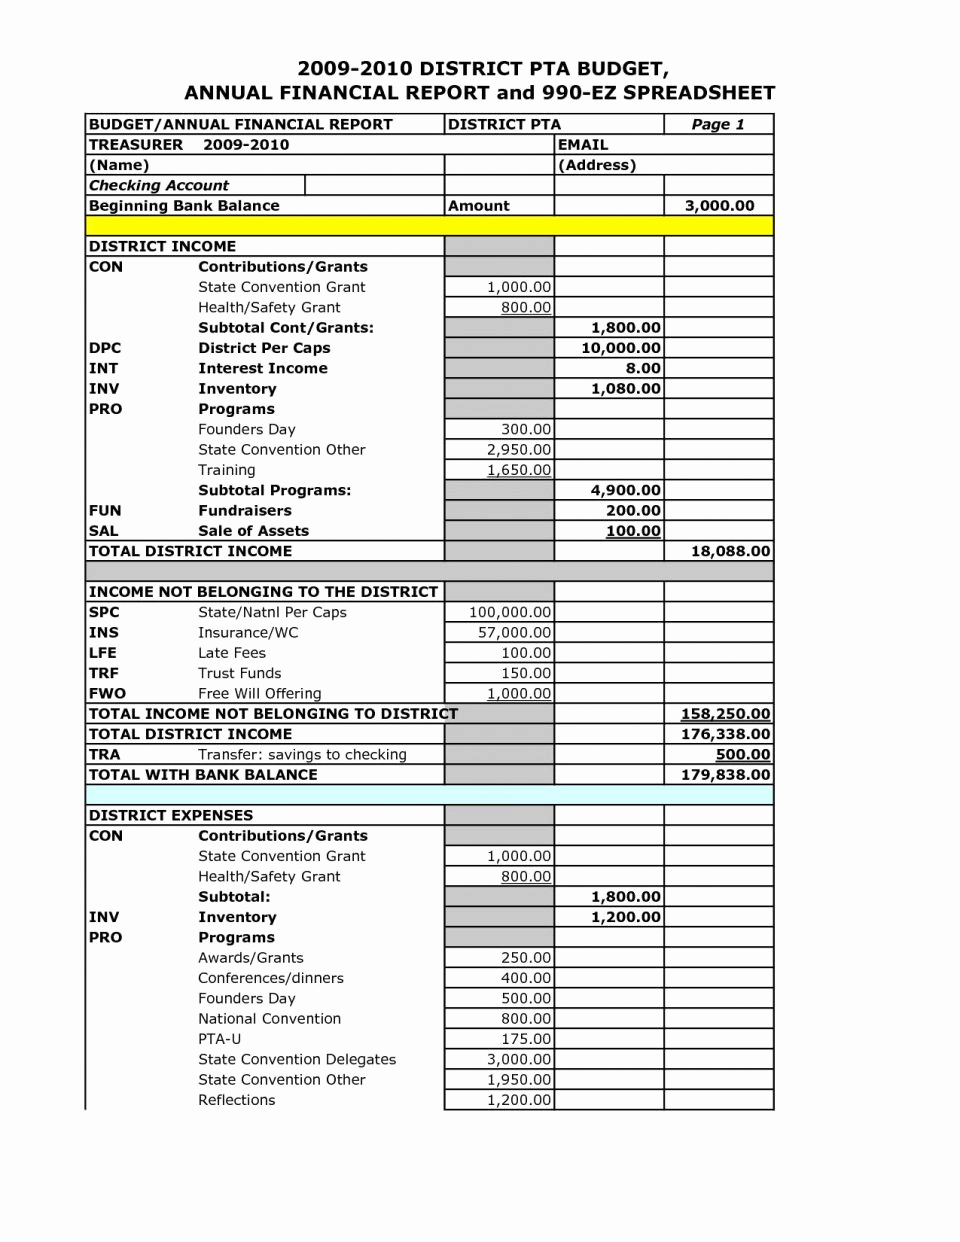 Treasurer s Report Excel Spreadsheet For Pta Treasurer Report Excel Template Luxury Treasurer S